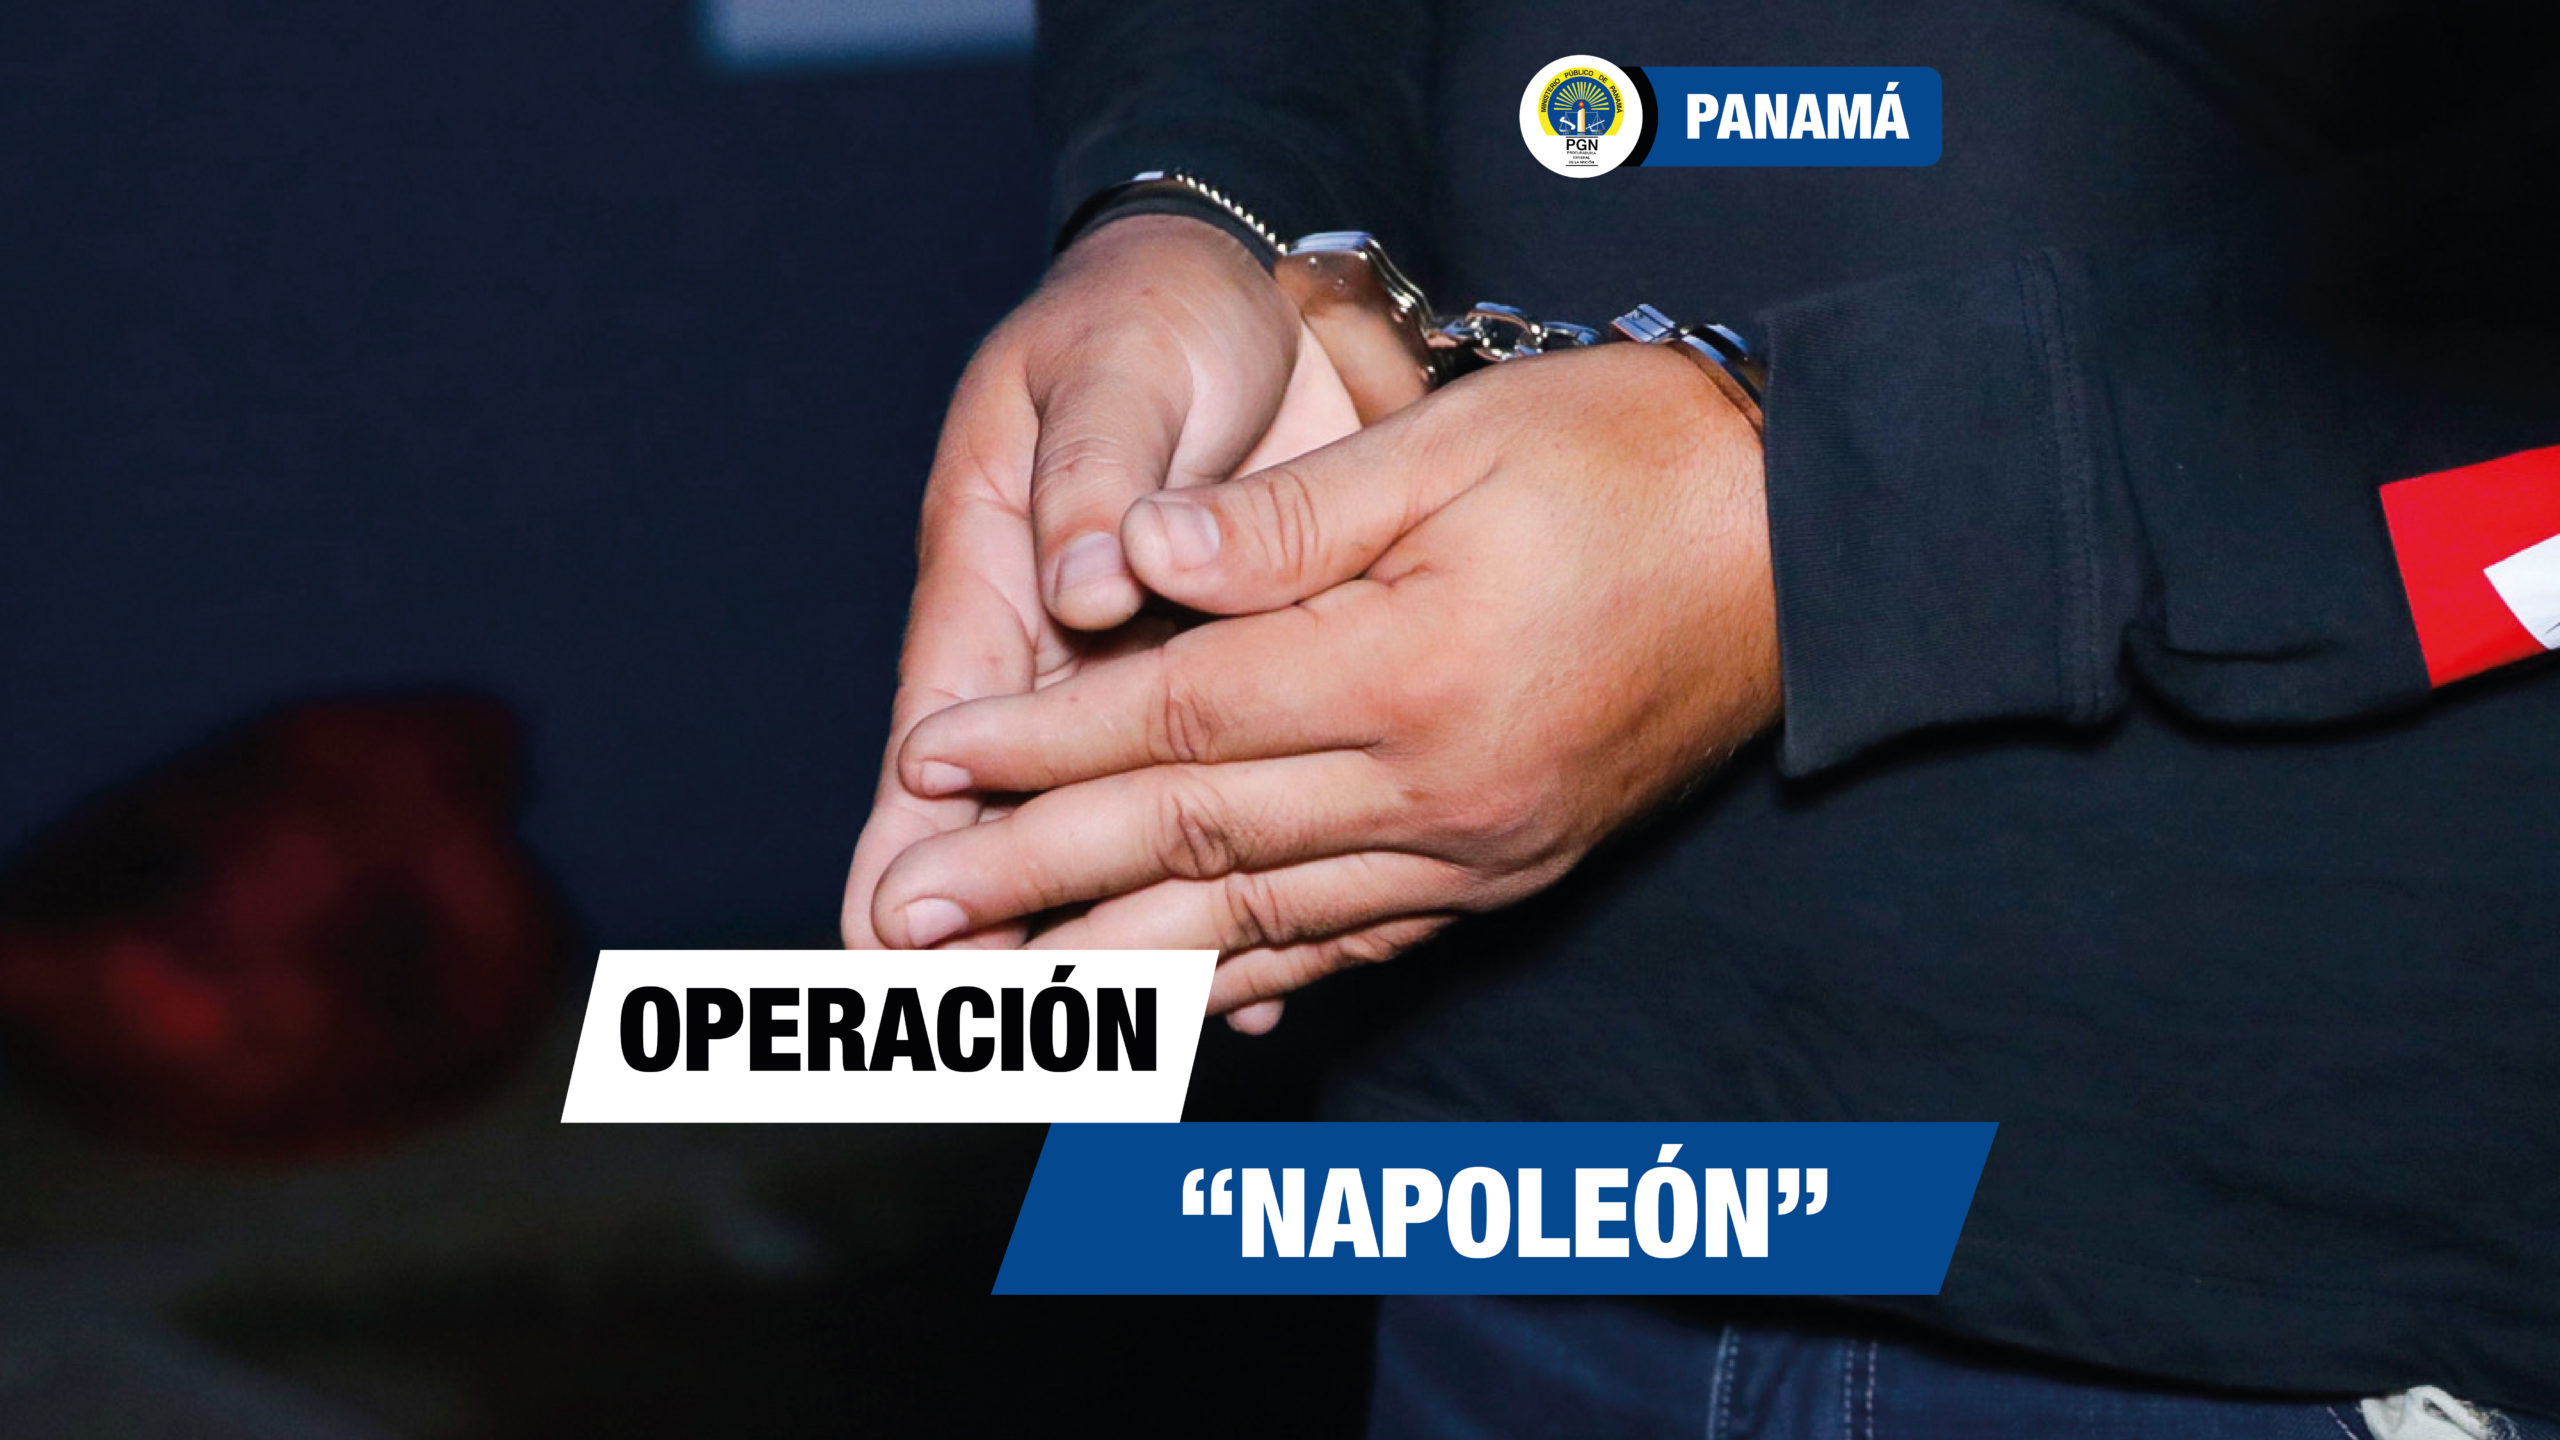 Aprehenden a 39 personas en las operaciones “Napoleón” y “Fixar” realizadas por las Fiscalías de Drogas y Pandillerismo